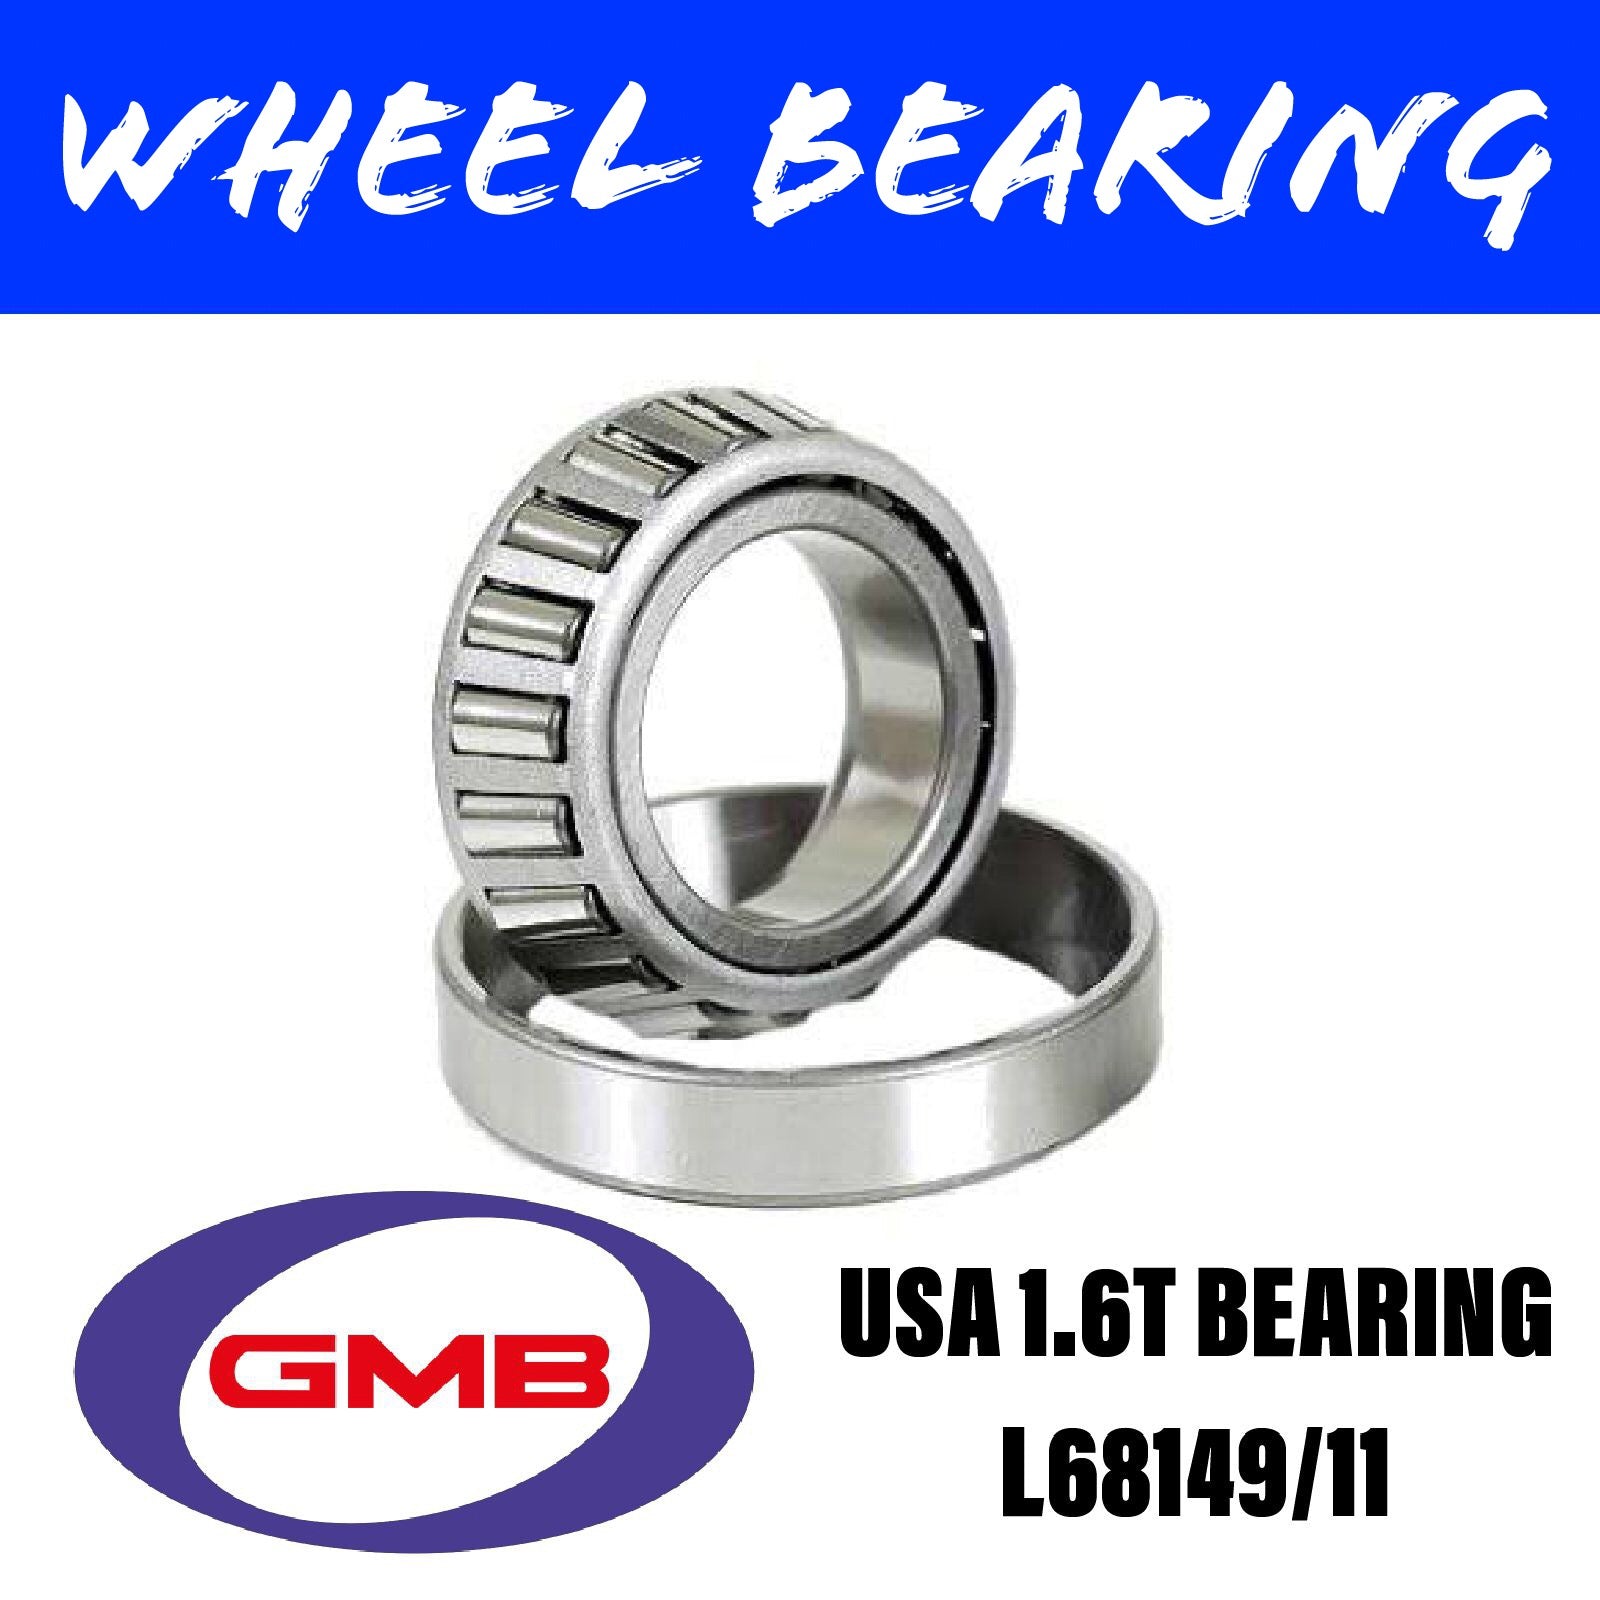 GMB L68149/11 Wheel Bearing